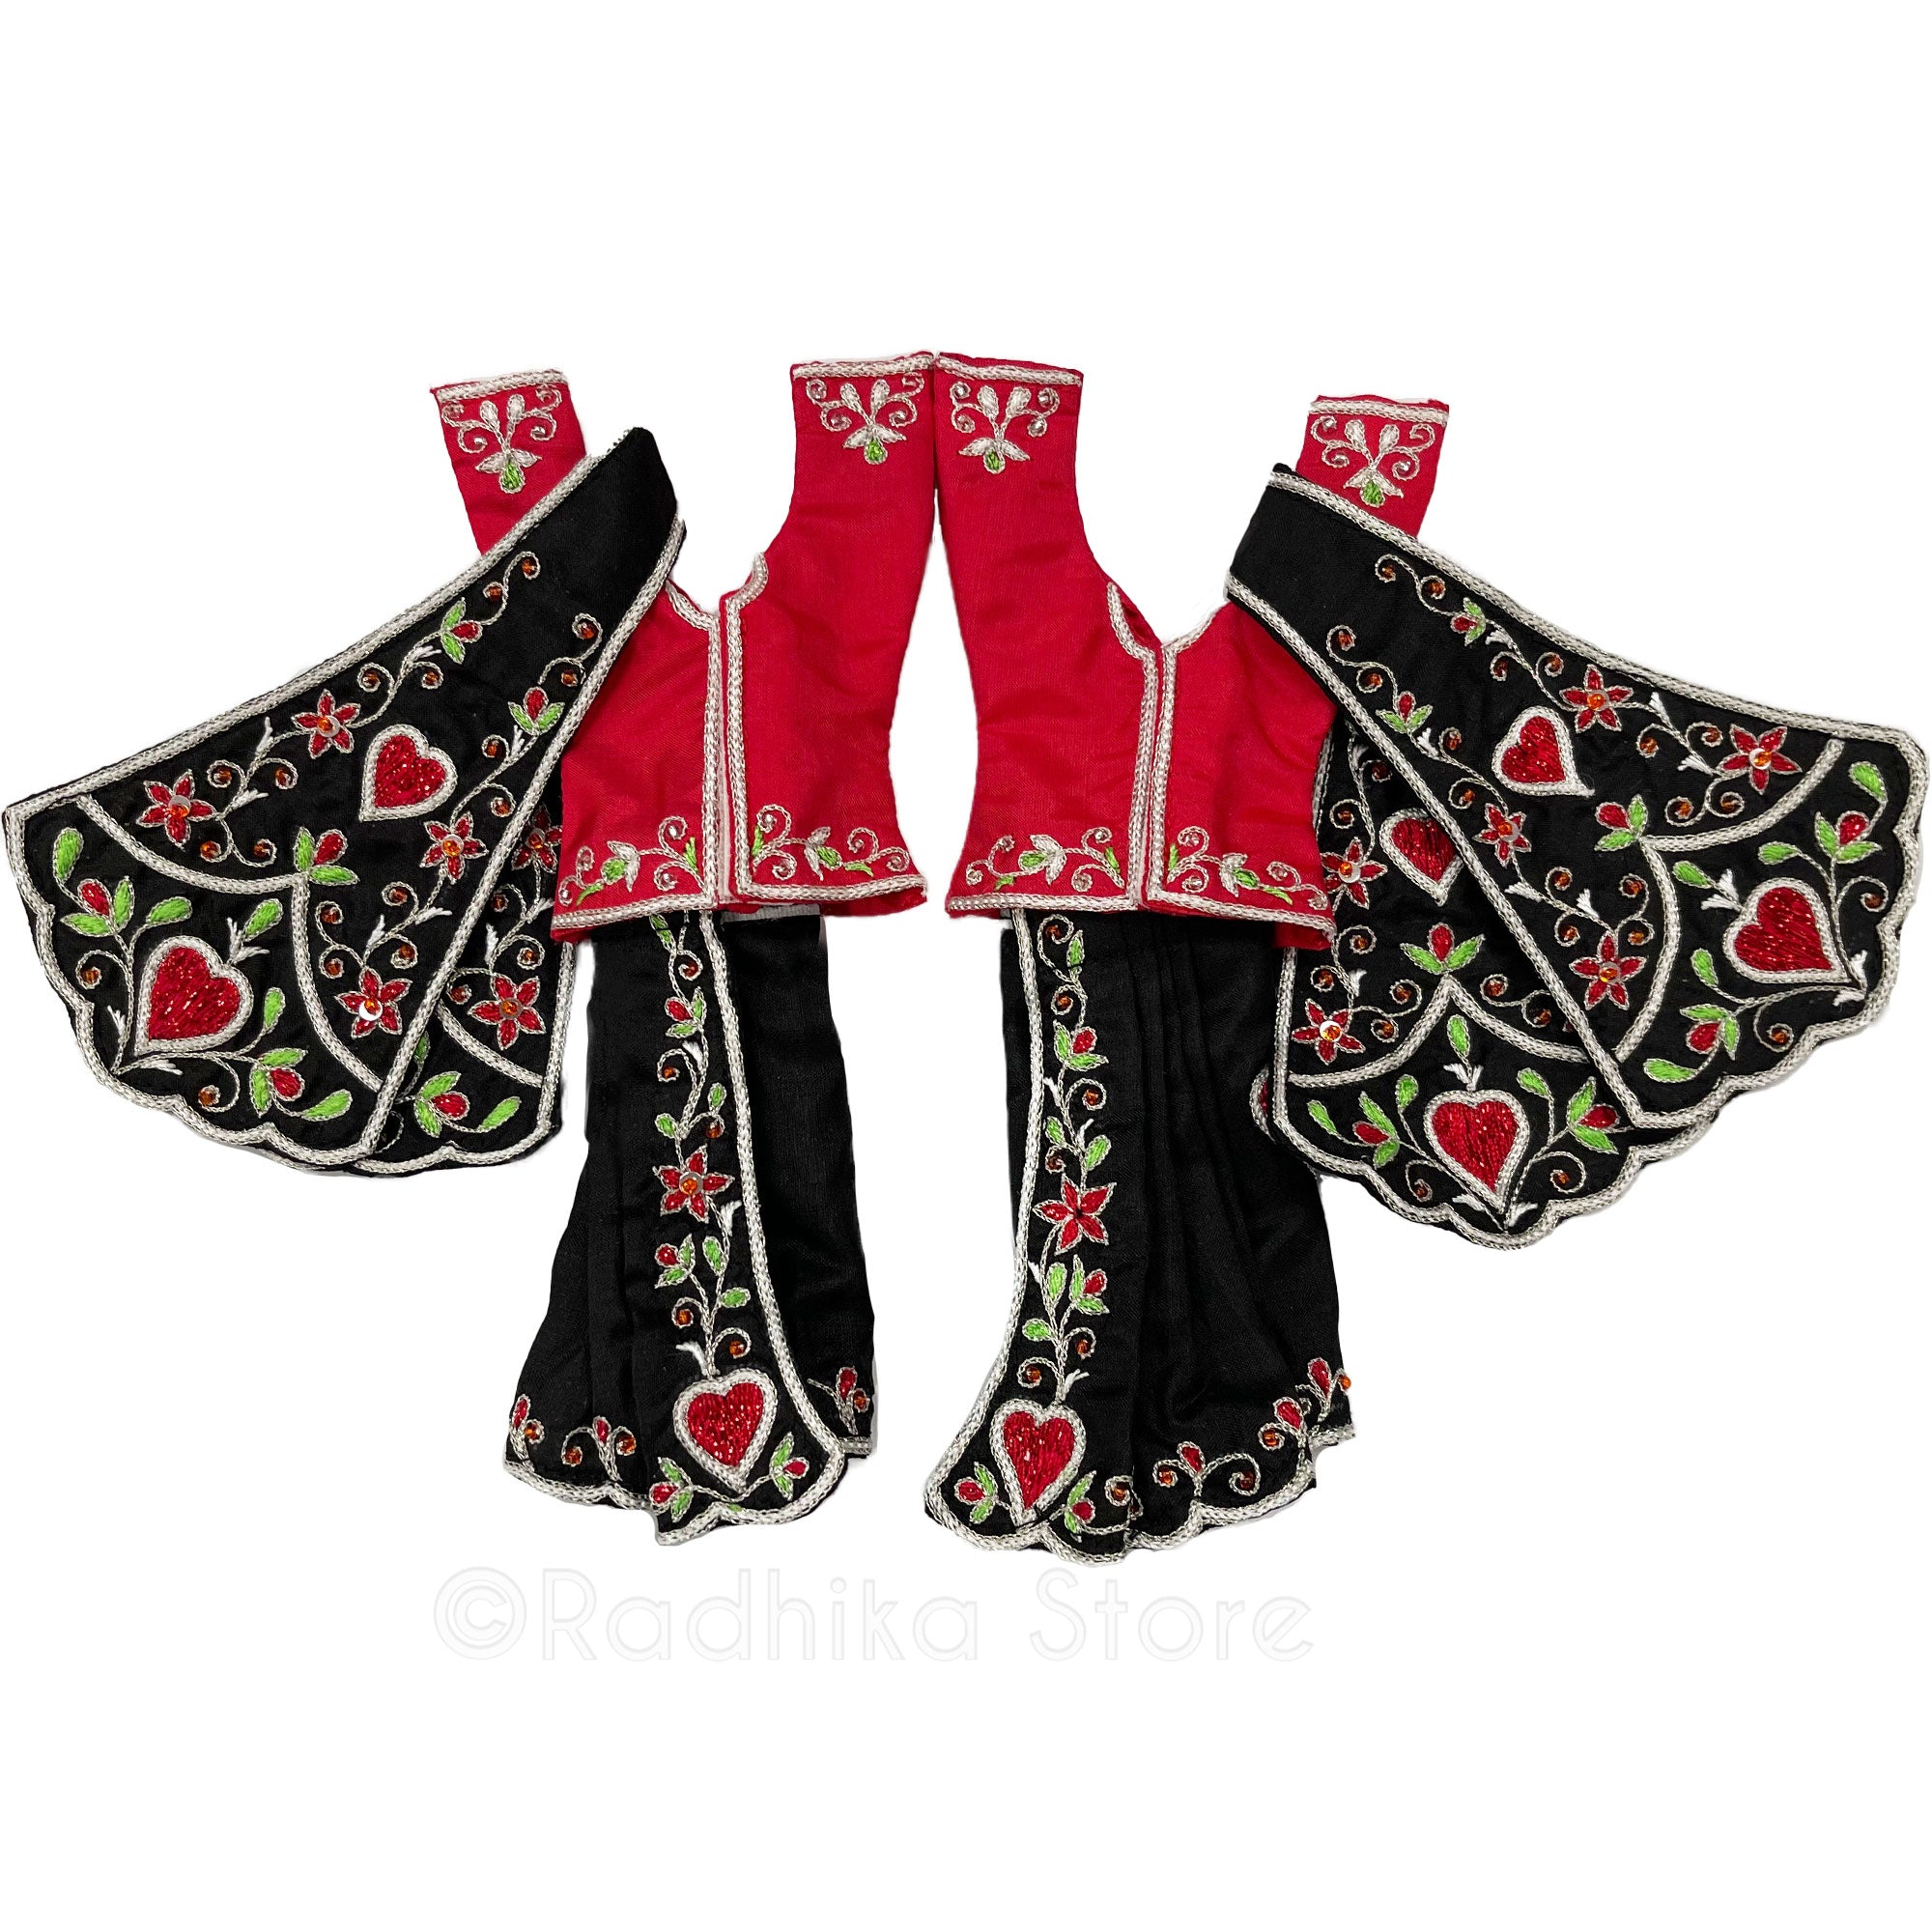 Bhakti Lata Bija - All Silk - Black with Red Kurtas - Gaura Nitai Deity Outfit